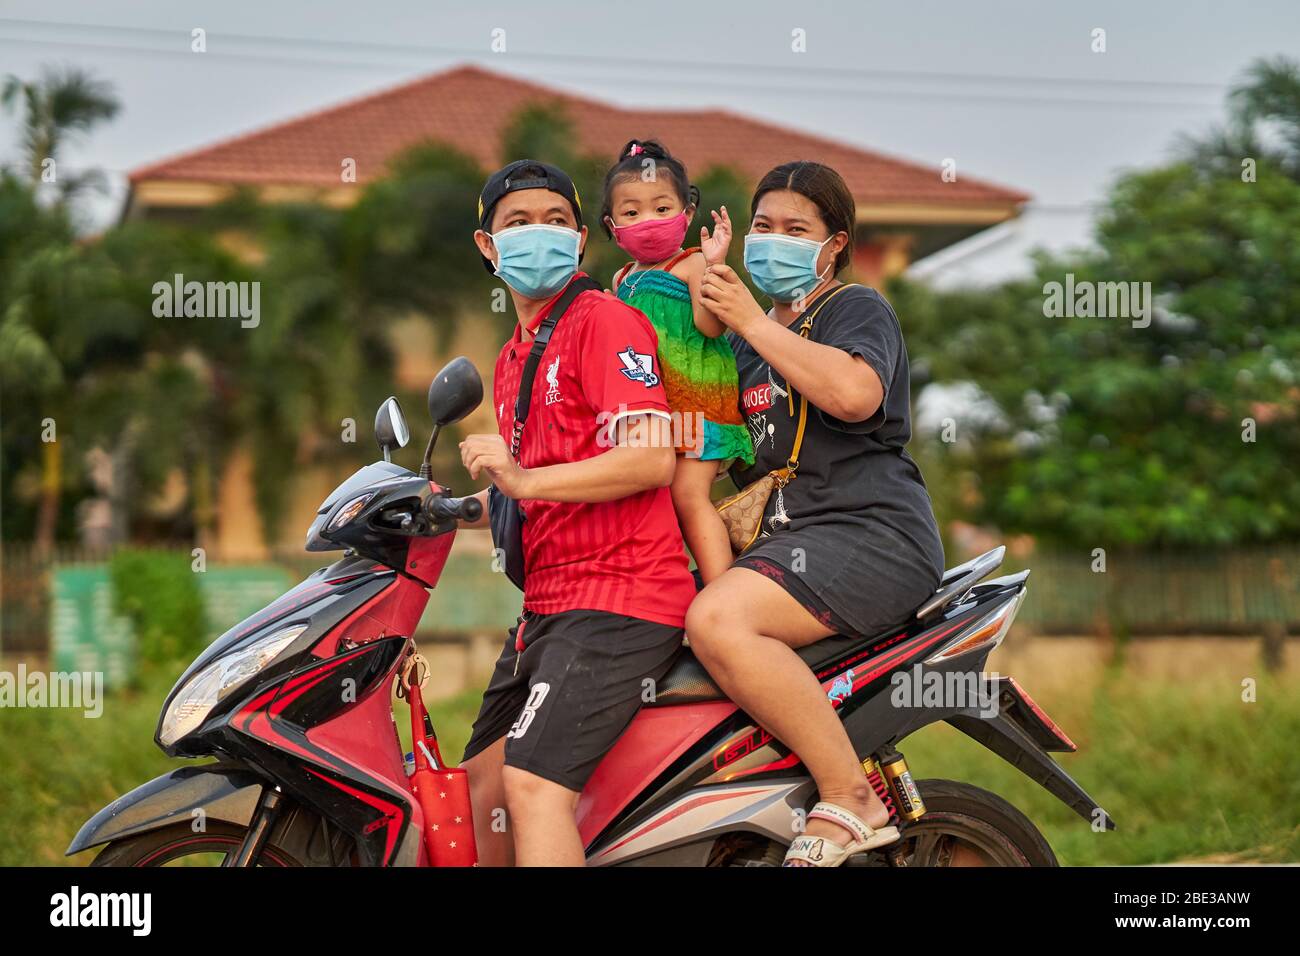 Une famille thaïlandaise voyageant sur une moto, tous portant des masques protecteurs, prise à Pathumthani, Thaïlande, en avril 2020. Banque D'Images